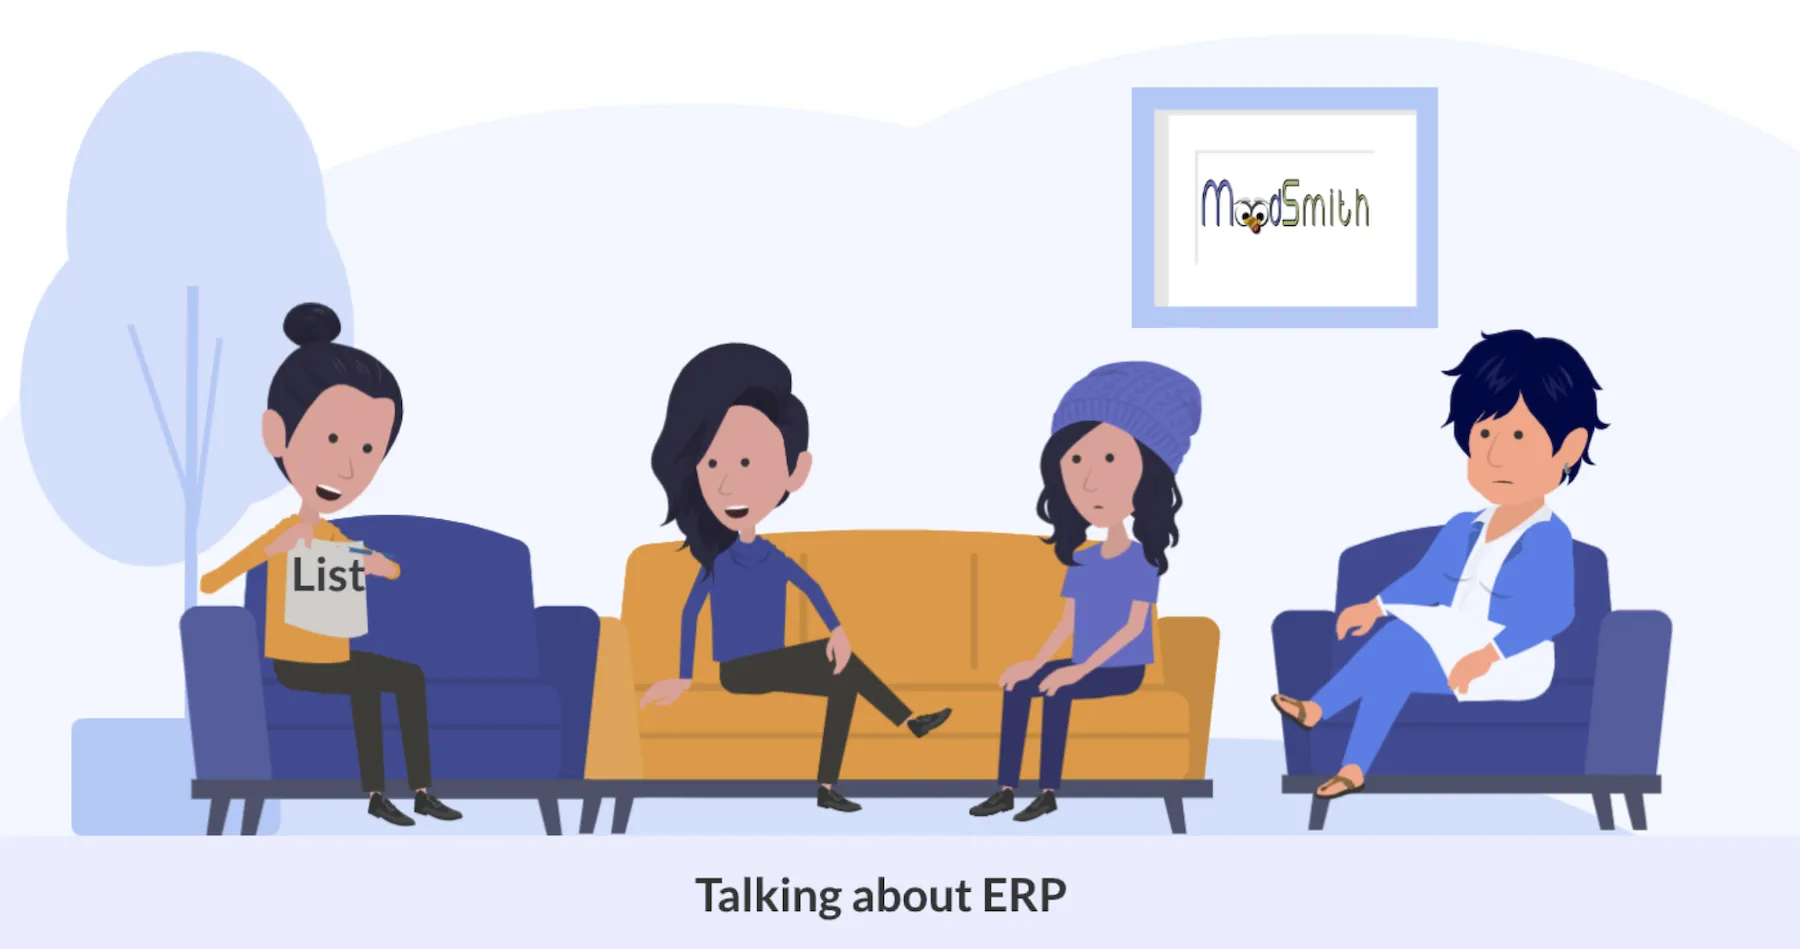 4 women talking about ERP